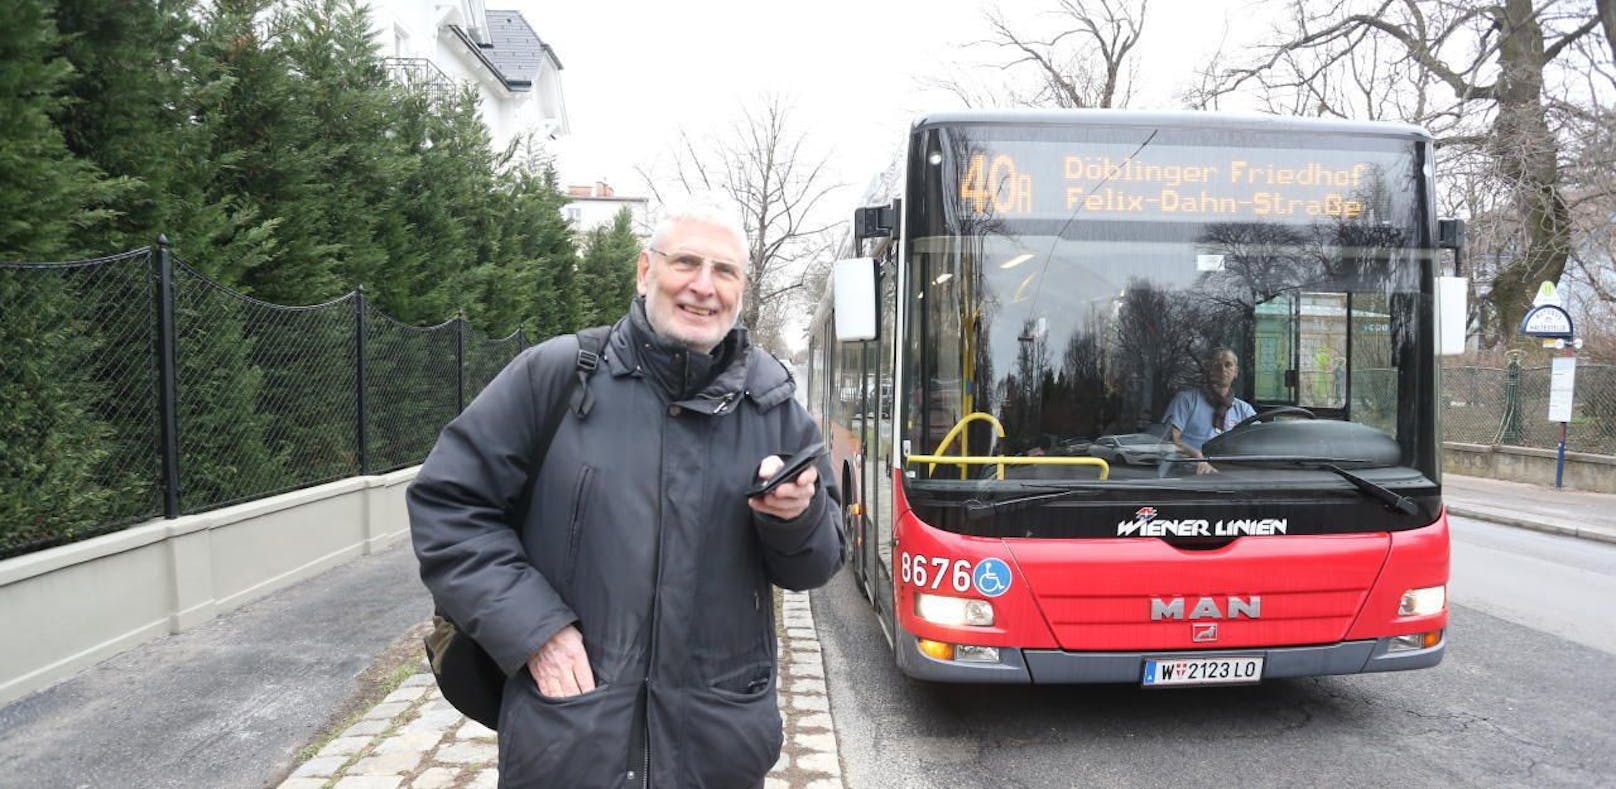 Peter D. verlor seine Geldbörse im Bus der Linie 40A. Ein Lenker der Wiener Linien gab sie ihm zurück. 